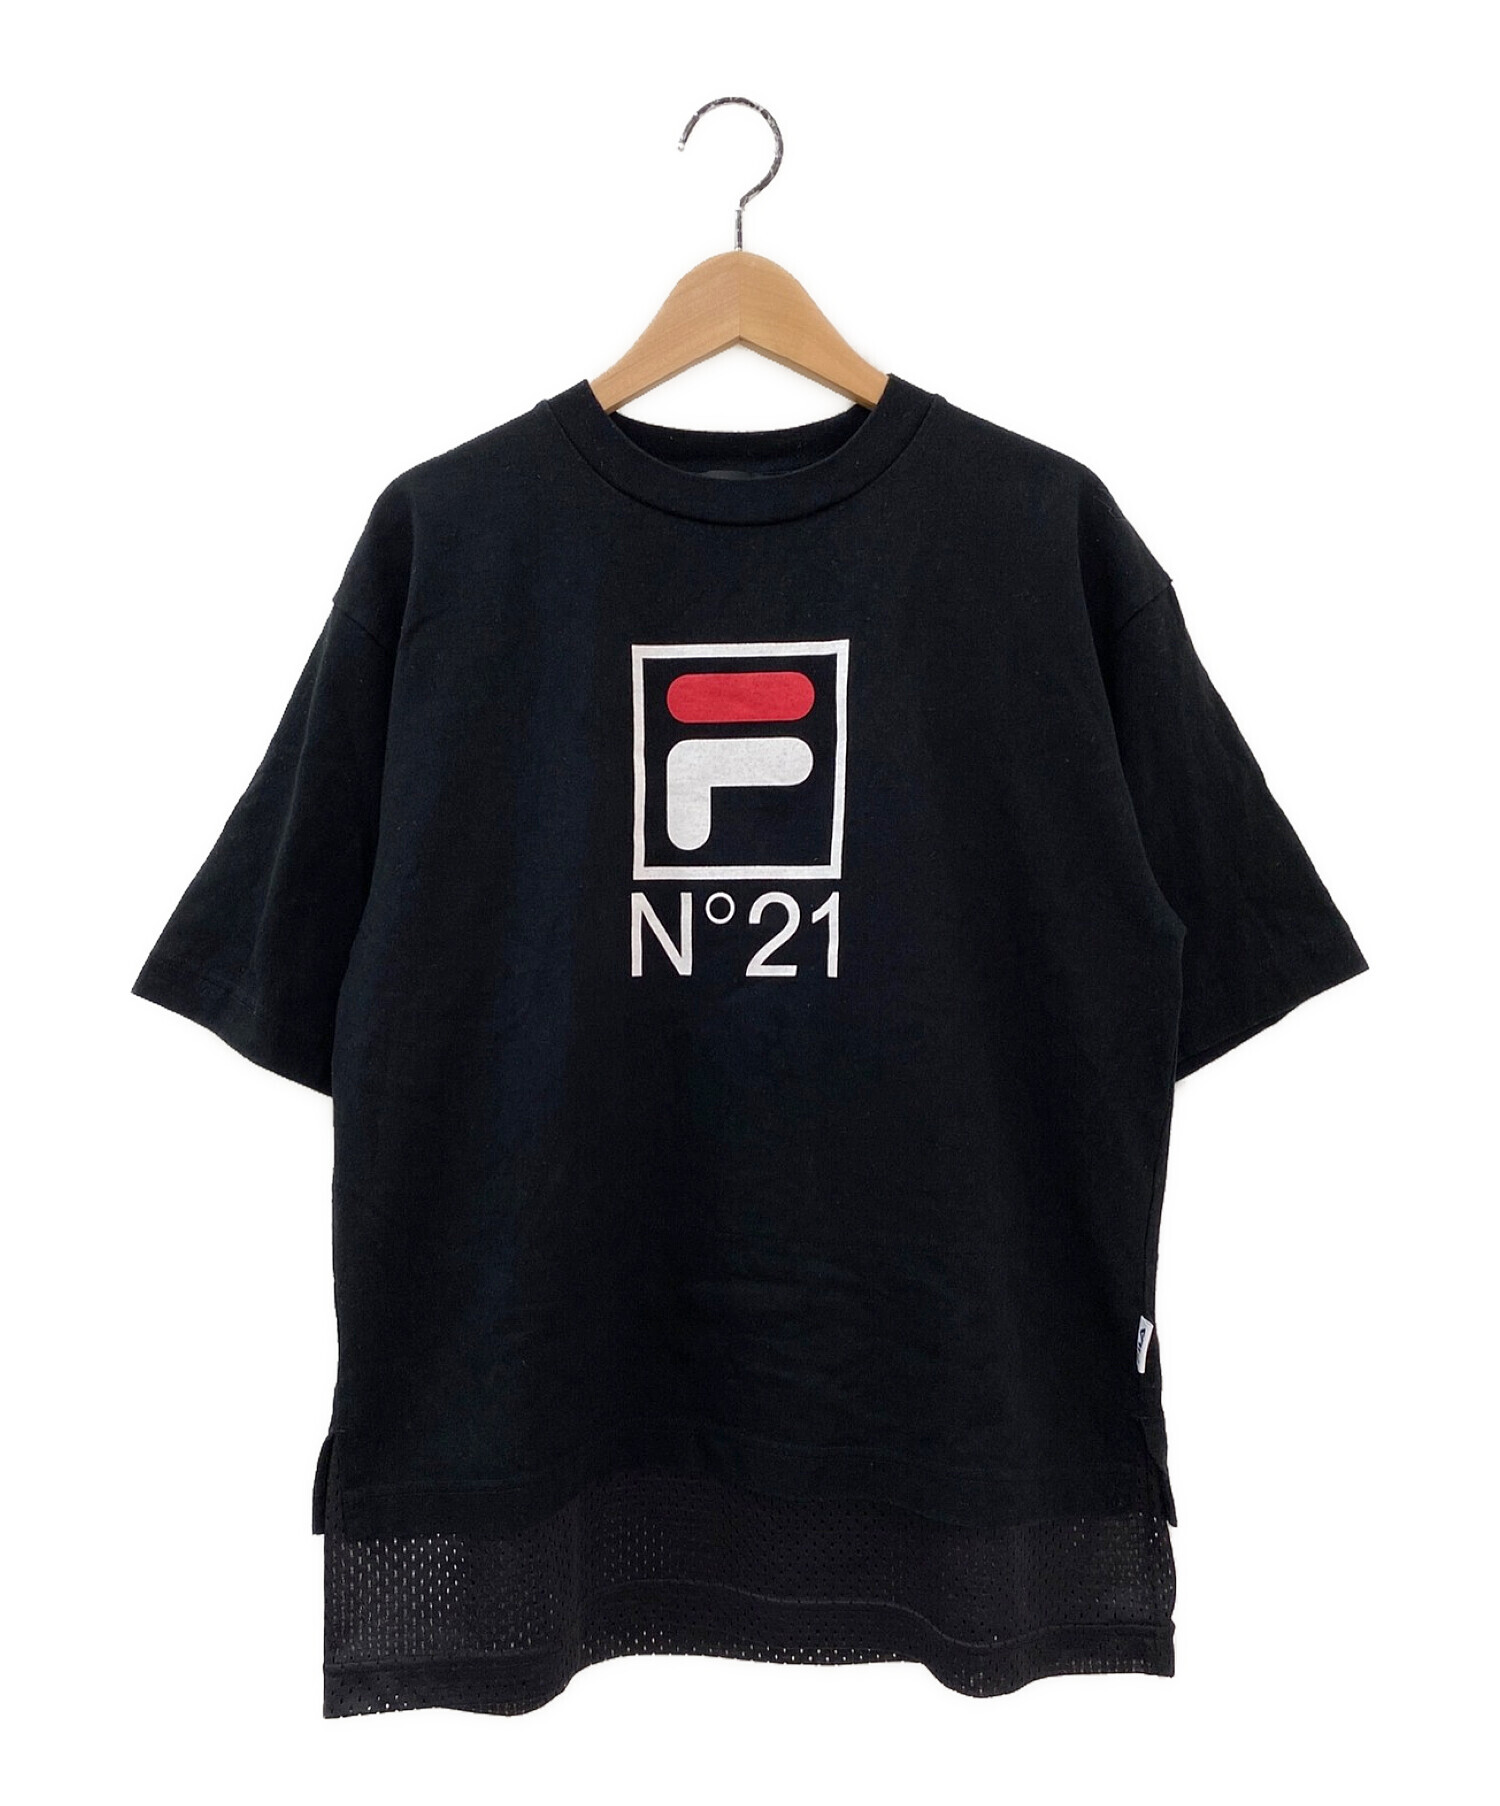 N°21 - ヌメロのTシャツです。の+oscarmaiello.it